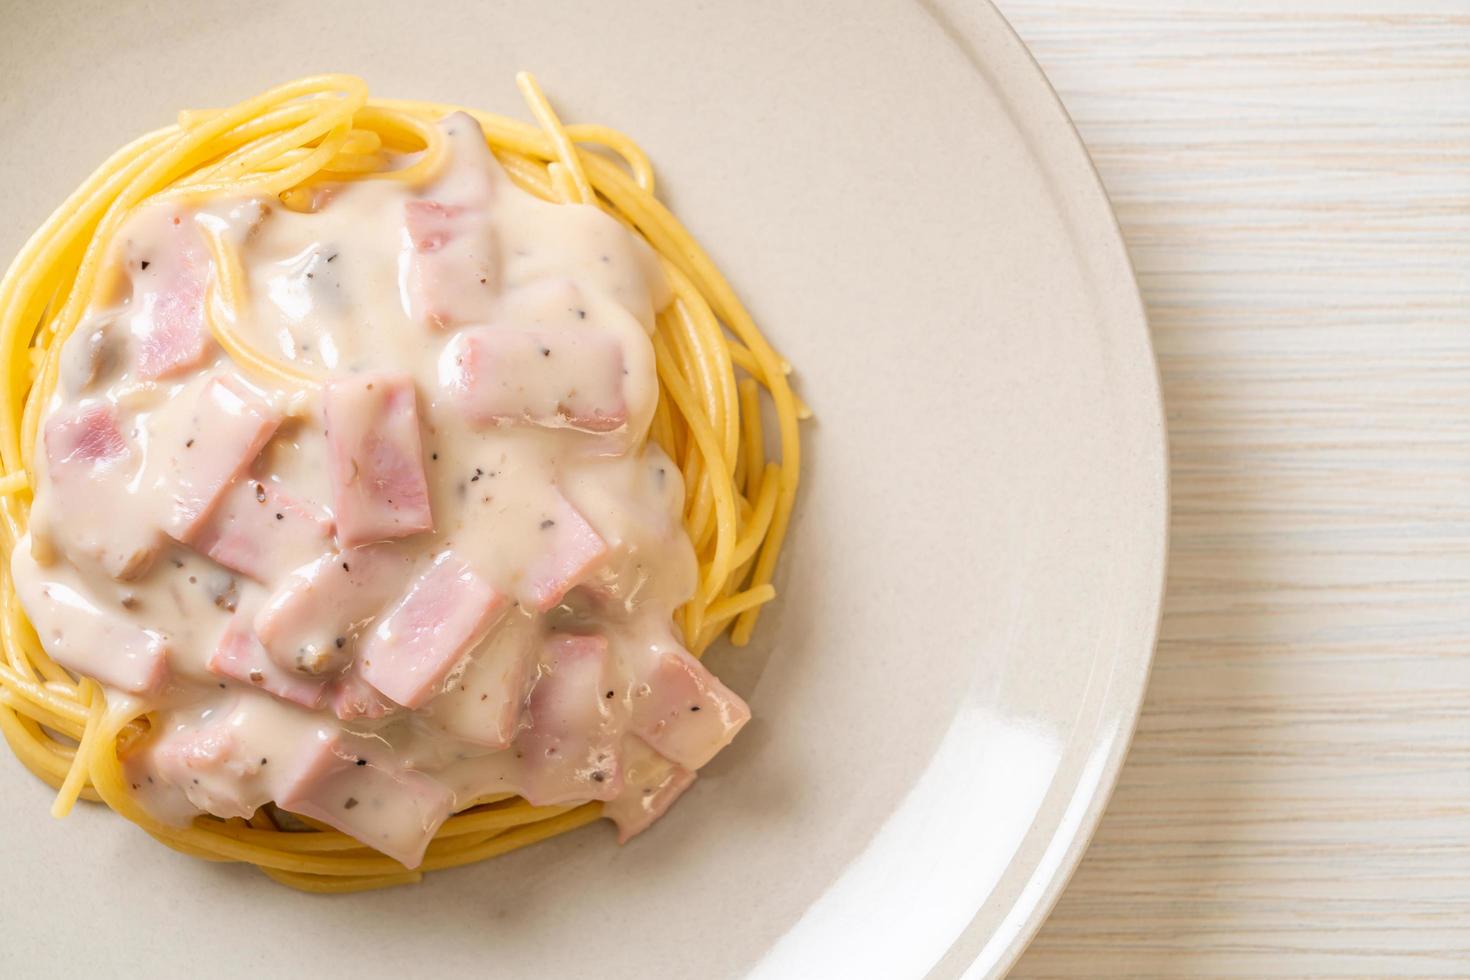 hausgemachte Spaghetti weiße Sahnesauce mit Schinken nach italienischer Art foto